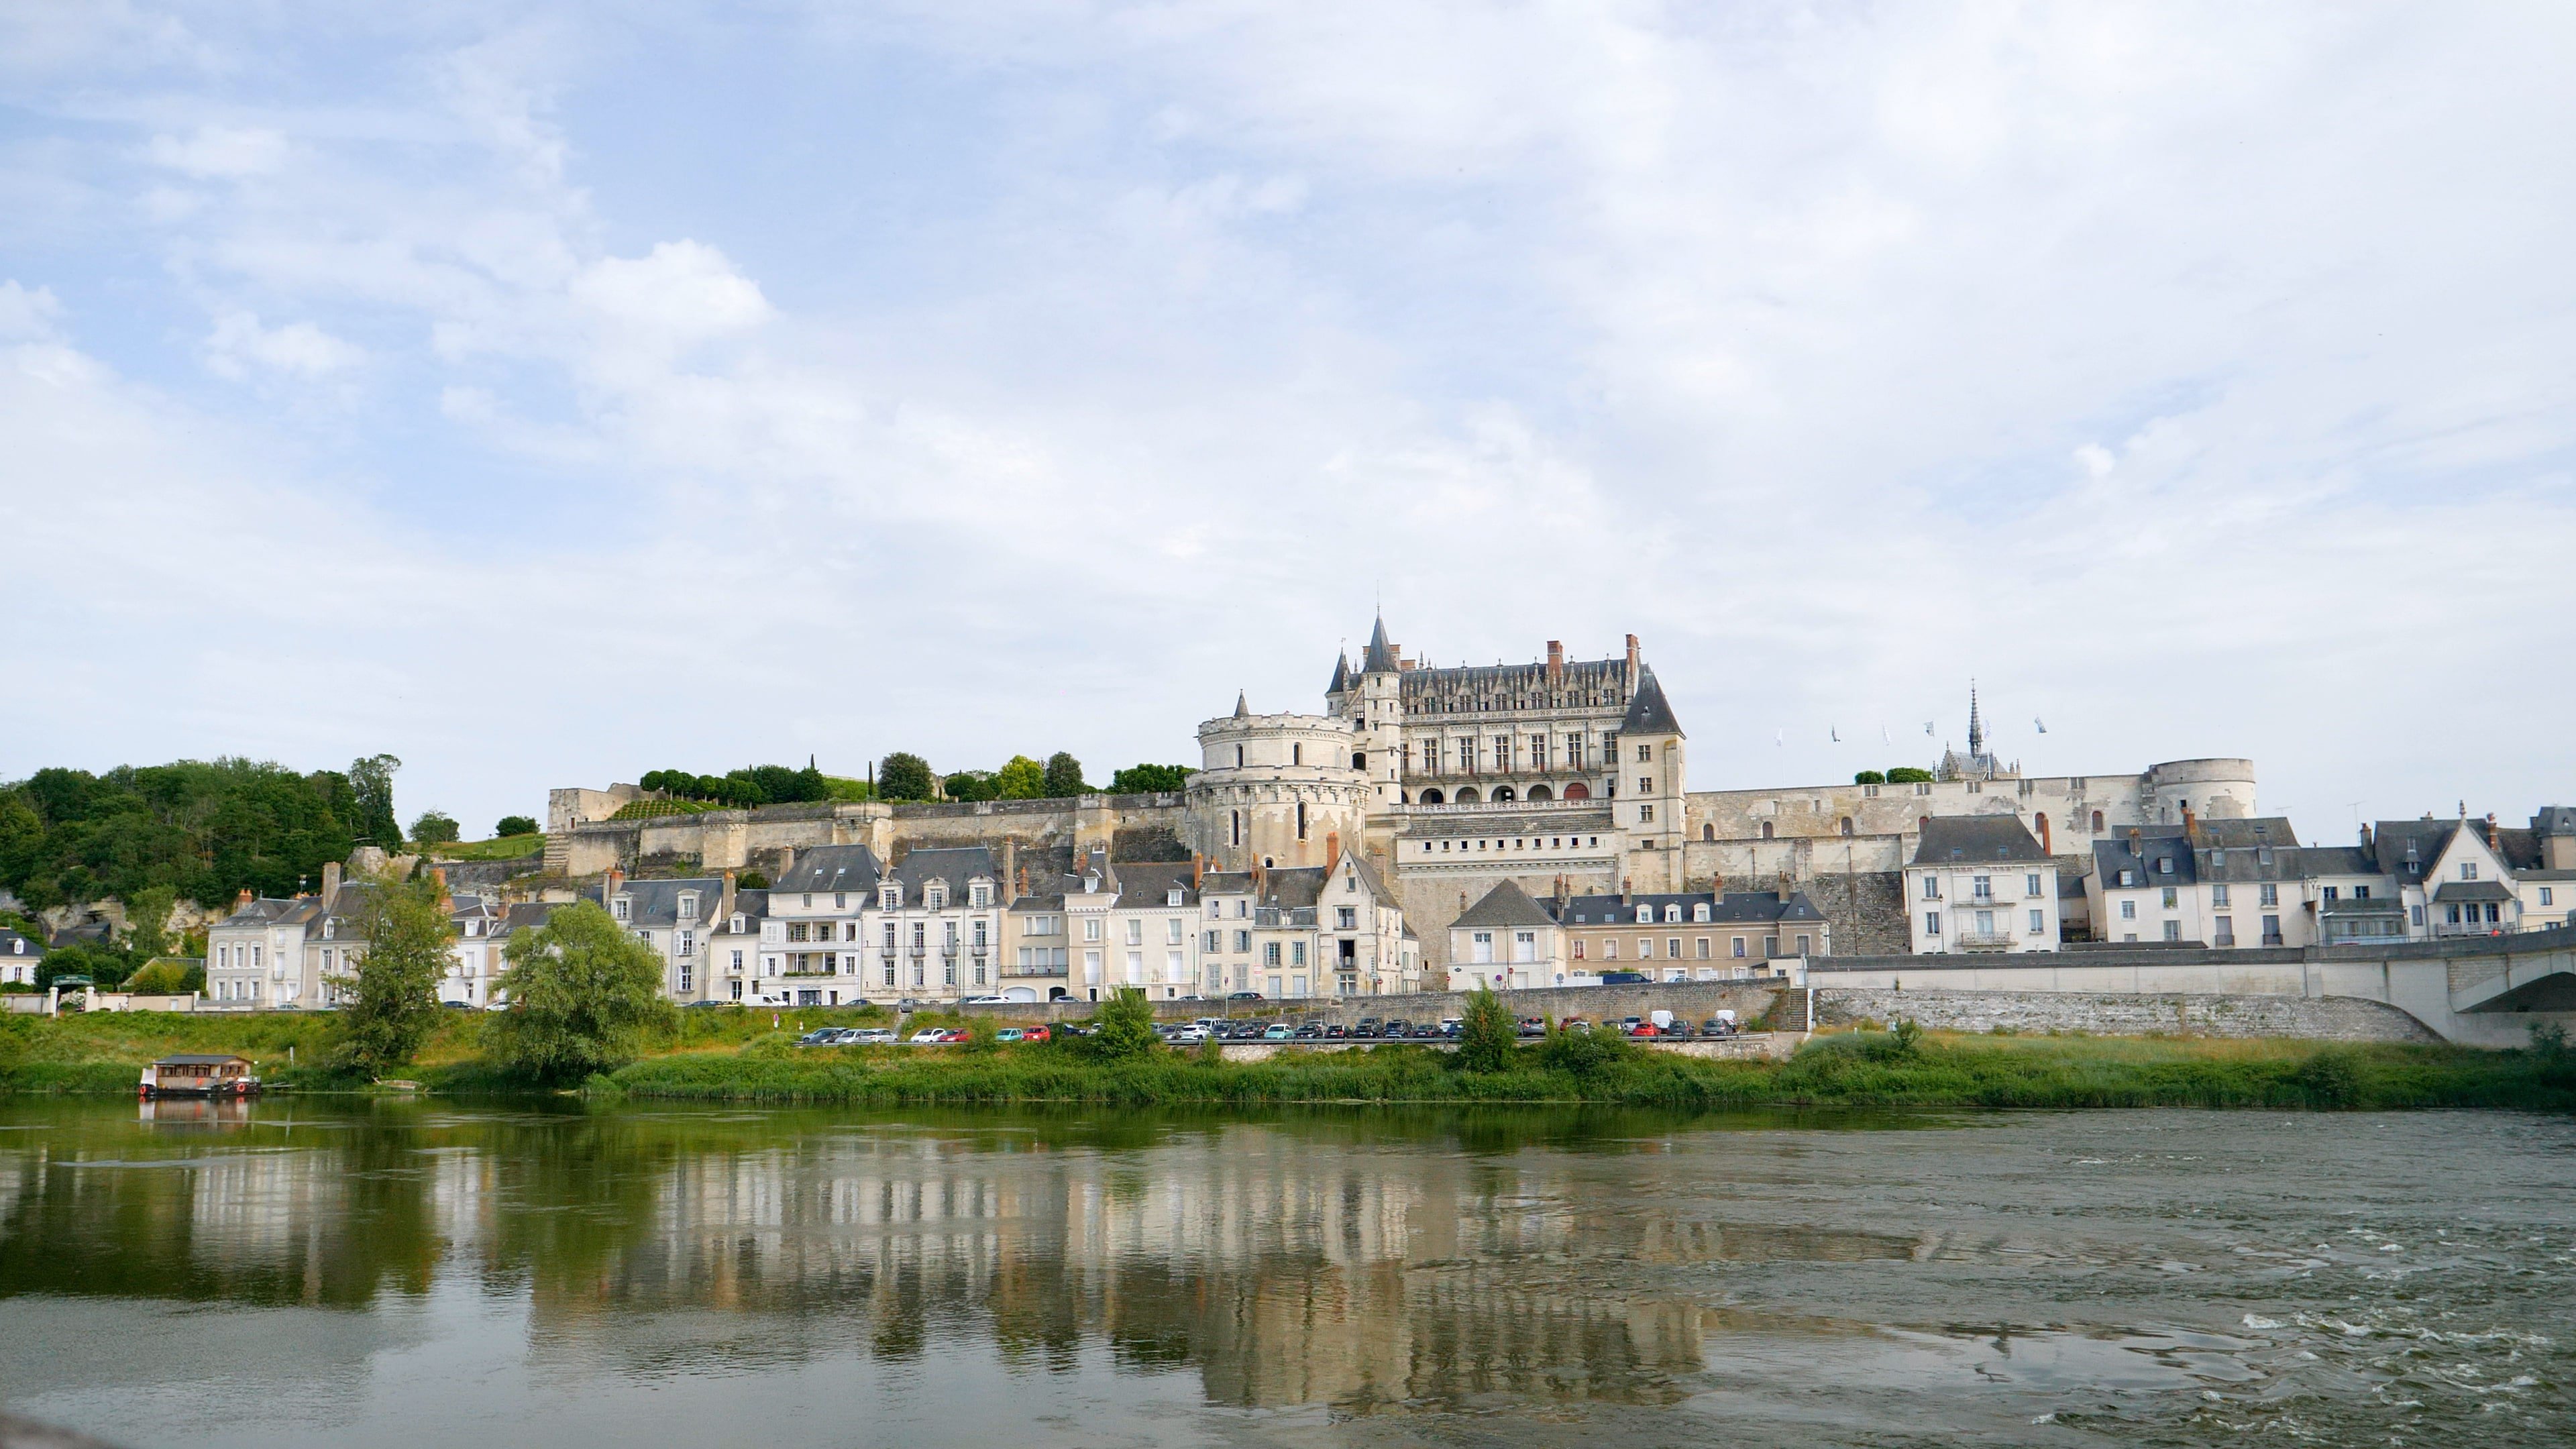 Connaissance du monde : Loire - Dame Ligeria, noble, sauvage et mystérieuse